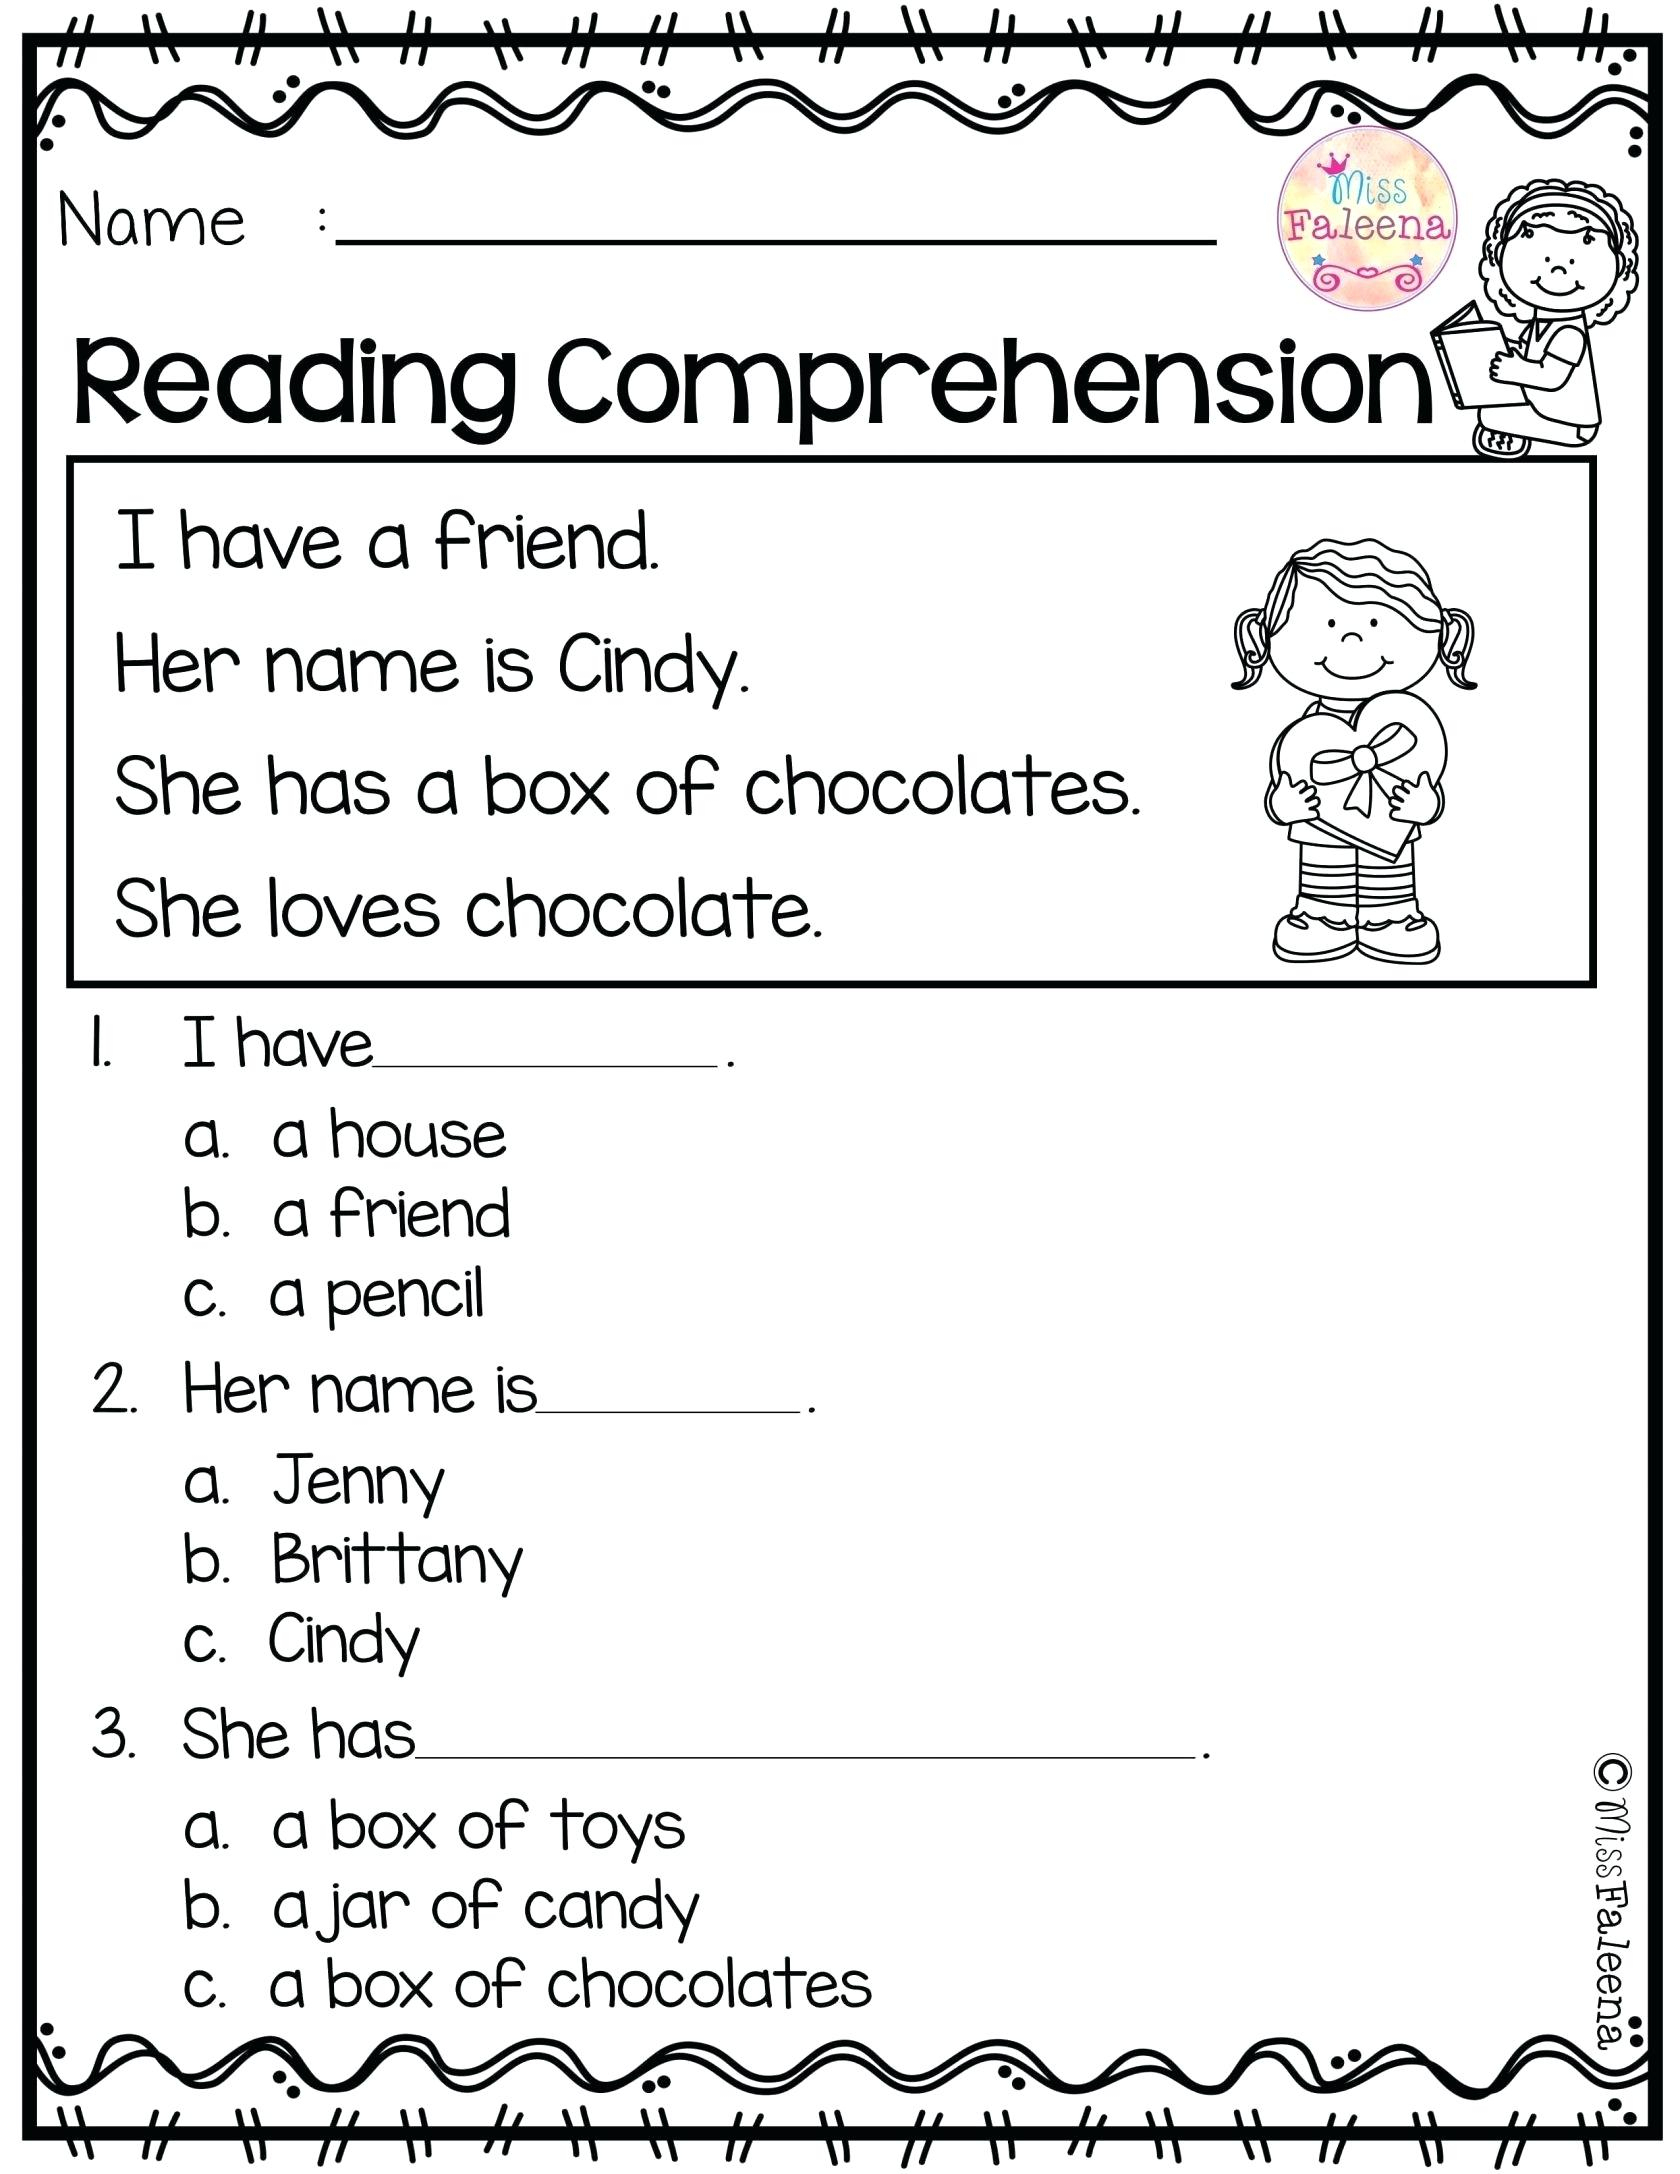 Reading Comprehension Worksheet 1St Grade – Karenlynndixon | Free Printable Reading Worksheets For 1St Grade